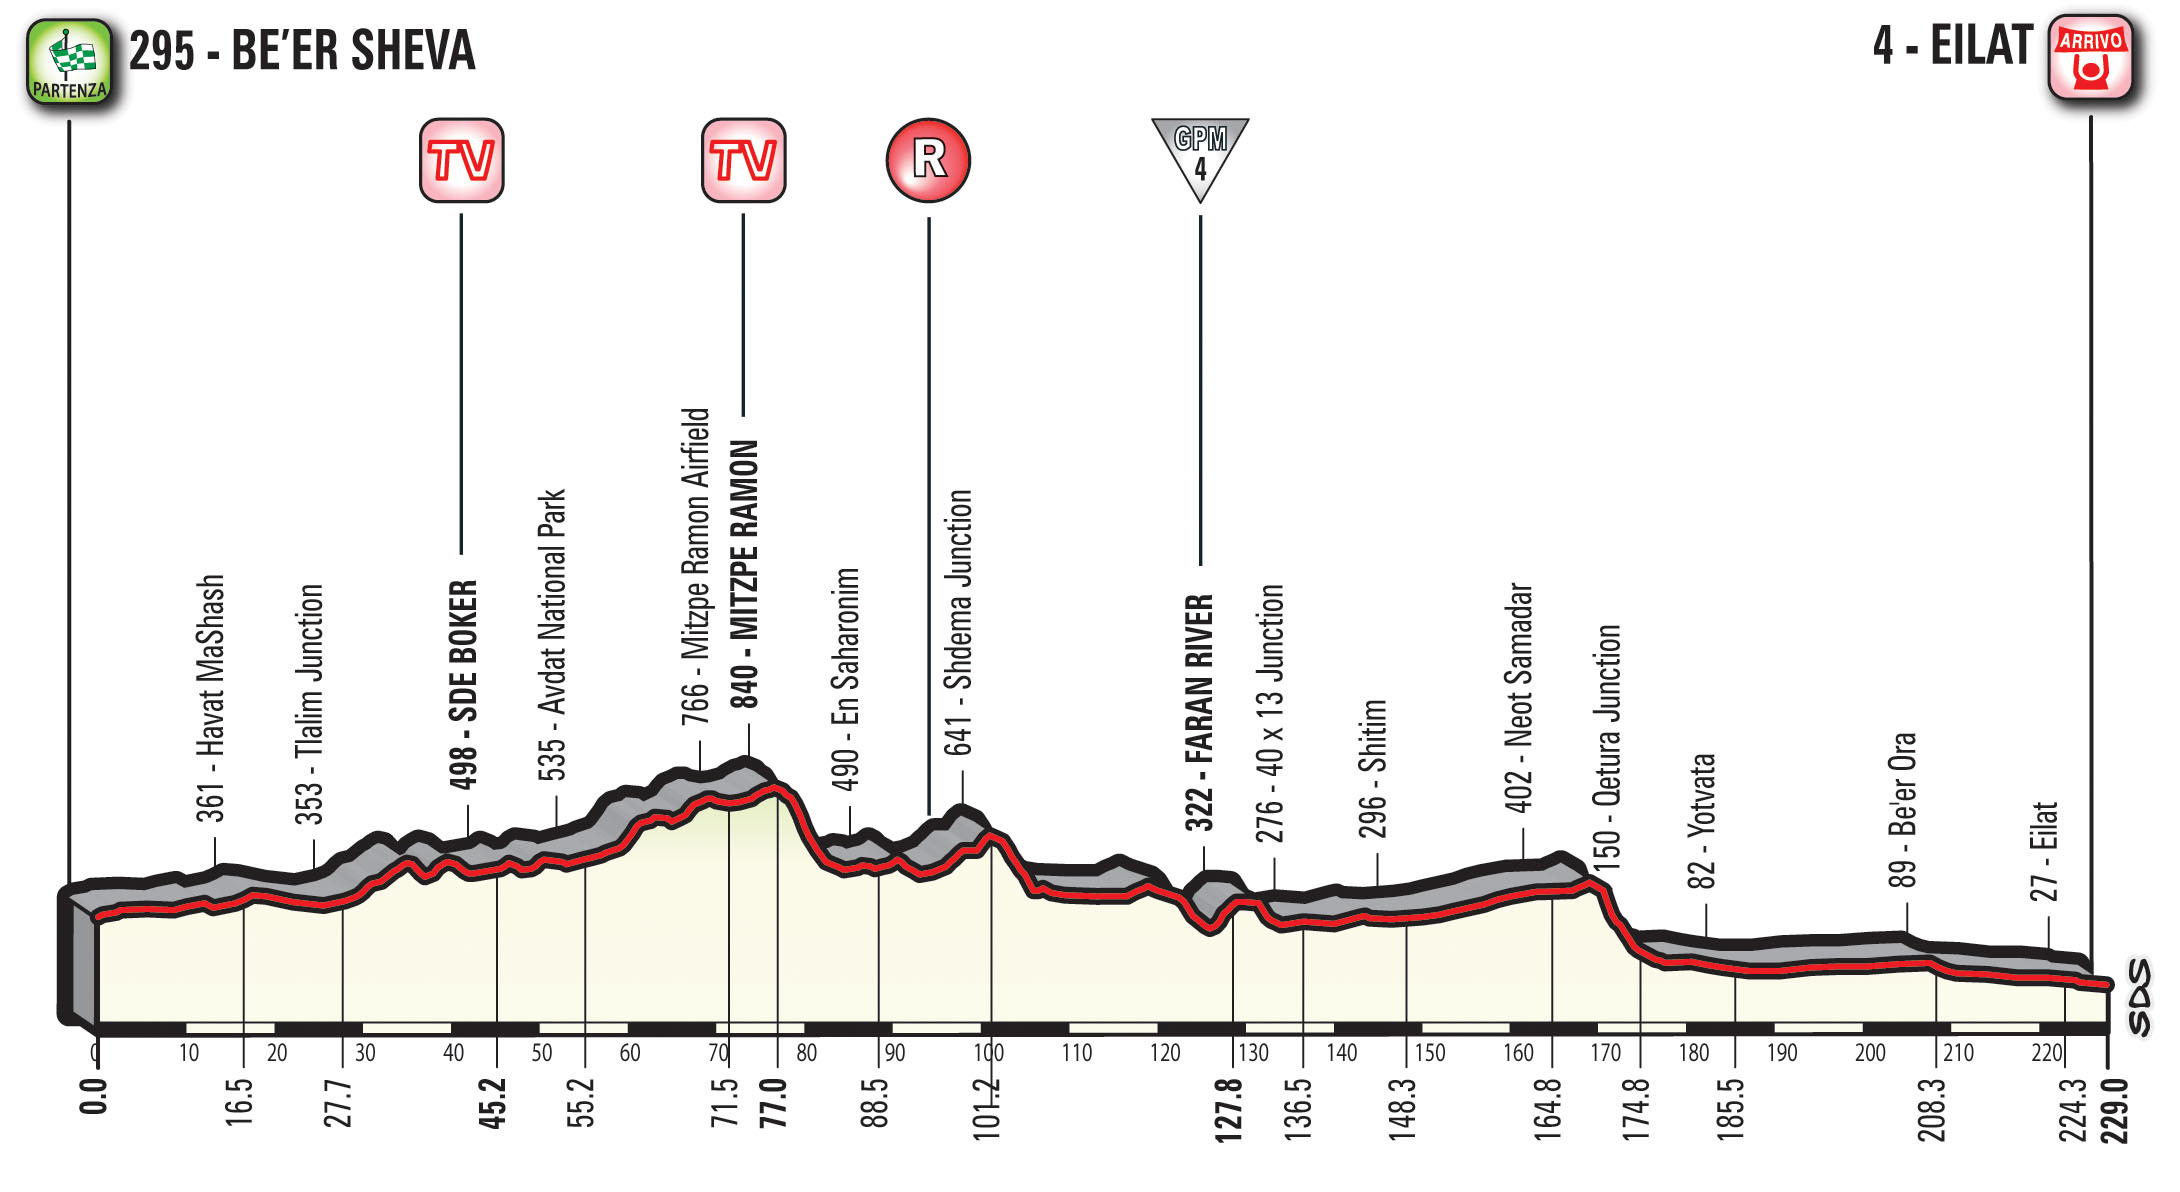 profil 3. etapu Giro d'Italia 2018